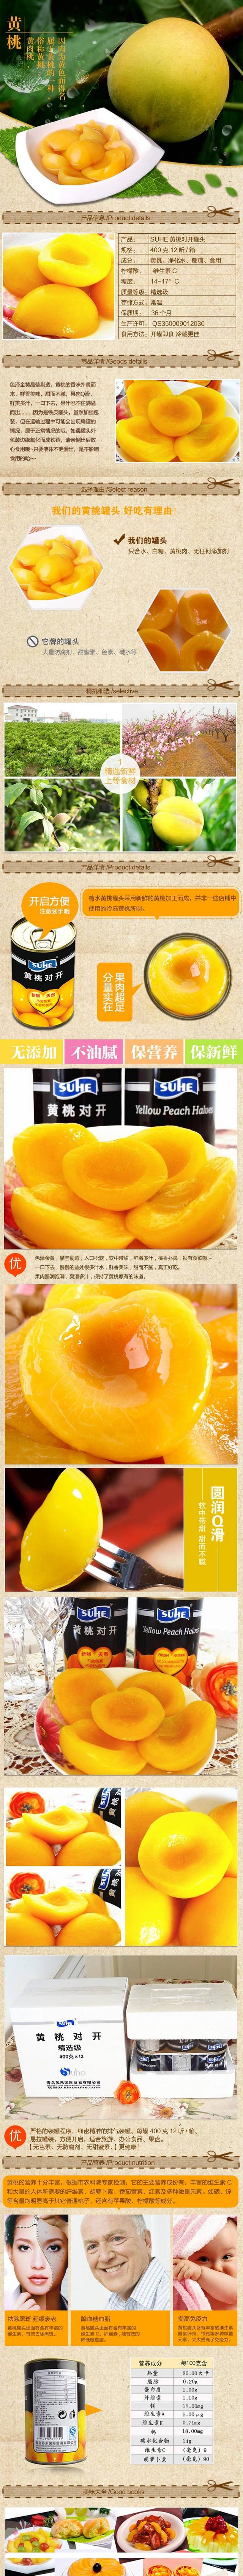 淘宝黄桃罐头细节描述图模板